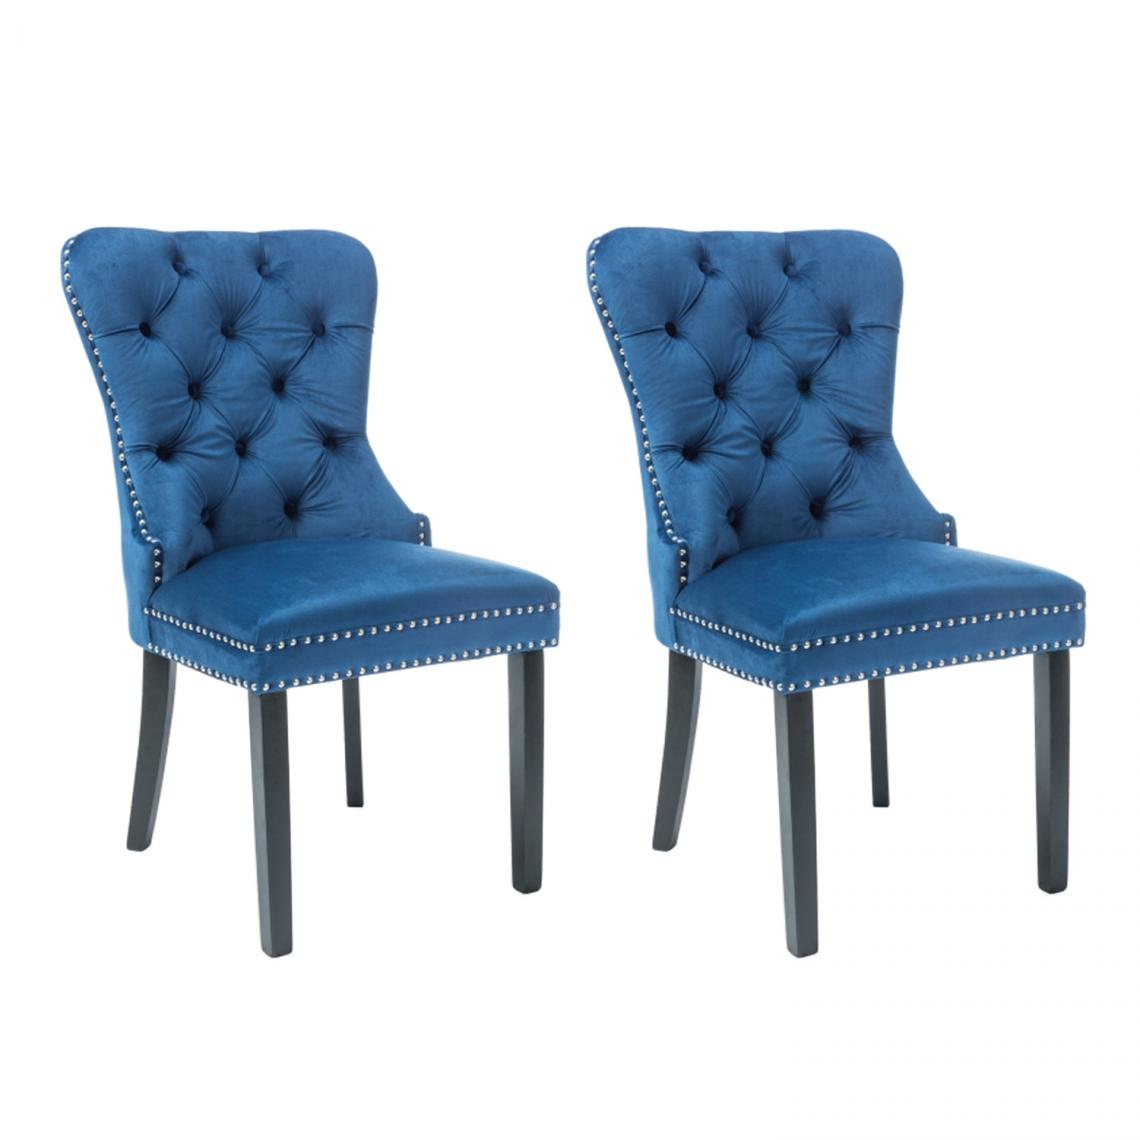 Hucoco - AMANDI - Lot de 2 chaises en tissu velouté -98x56x45 cm - Structure en bois - Style glamour - Bleu - Chaises